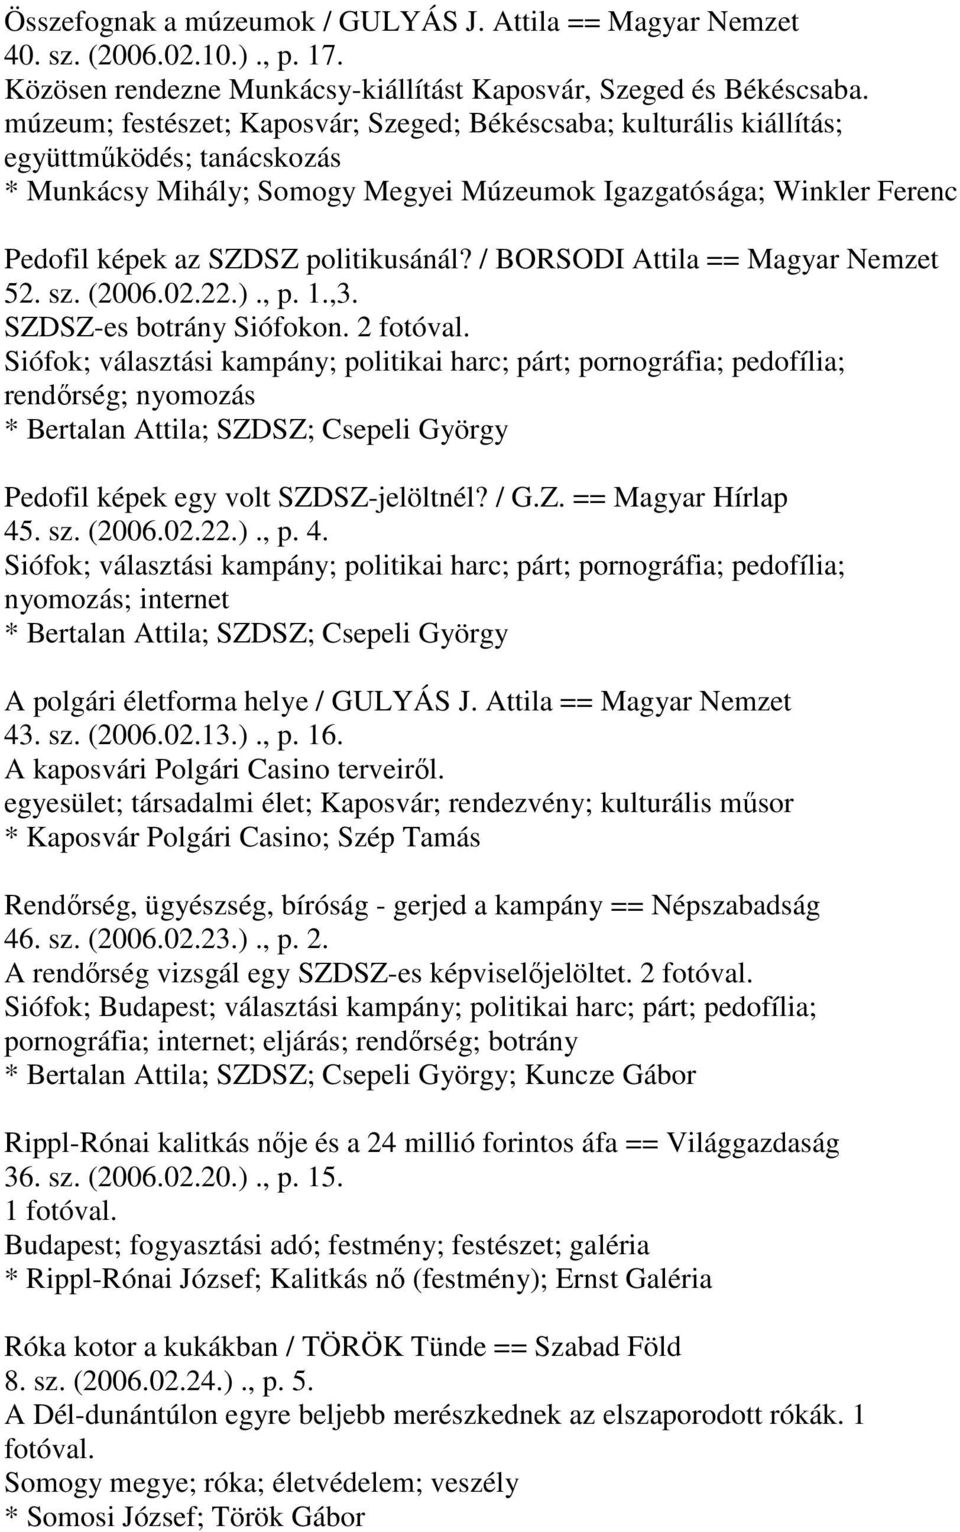 politikusánál? / BORSODI Attila == Magyar Nemzet 52. sz. (2006.02.22.)., p. 1.,3. SZDSZ-es botrány Siófokon. 2 fotóval.